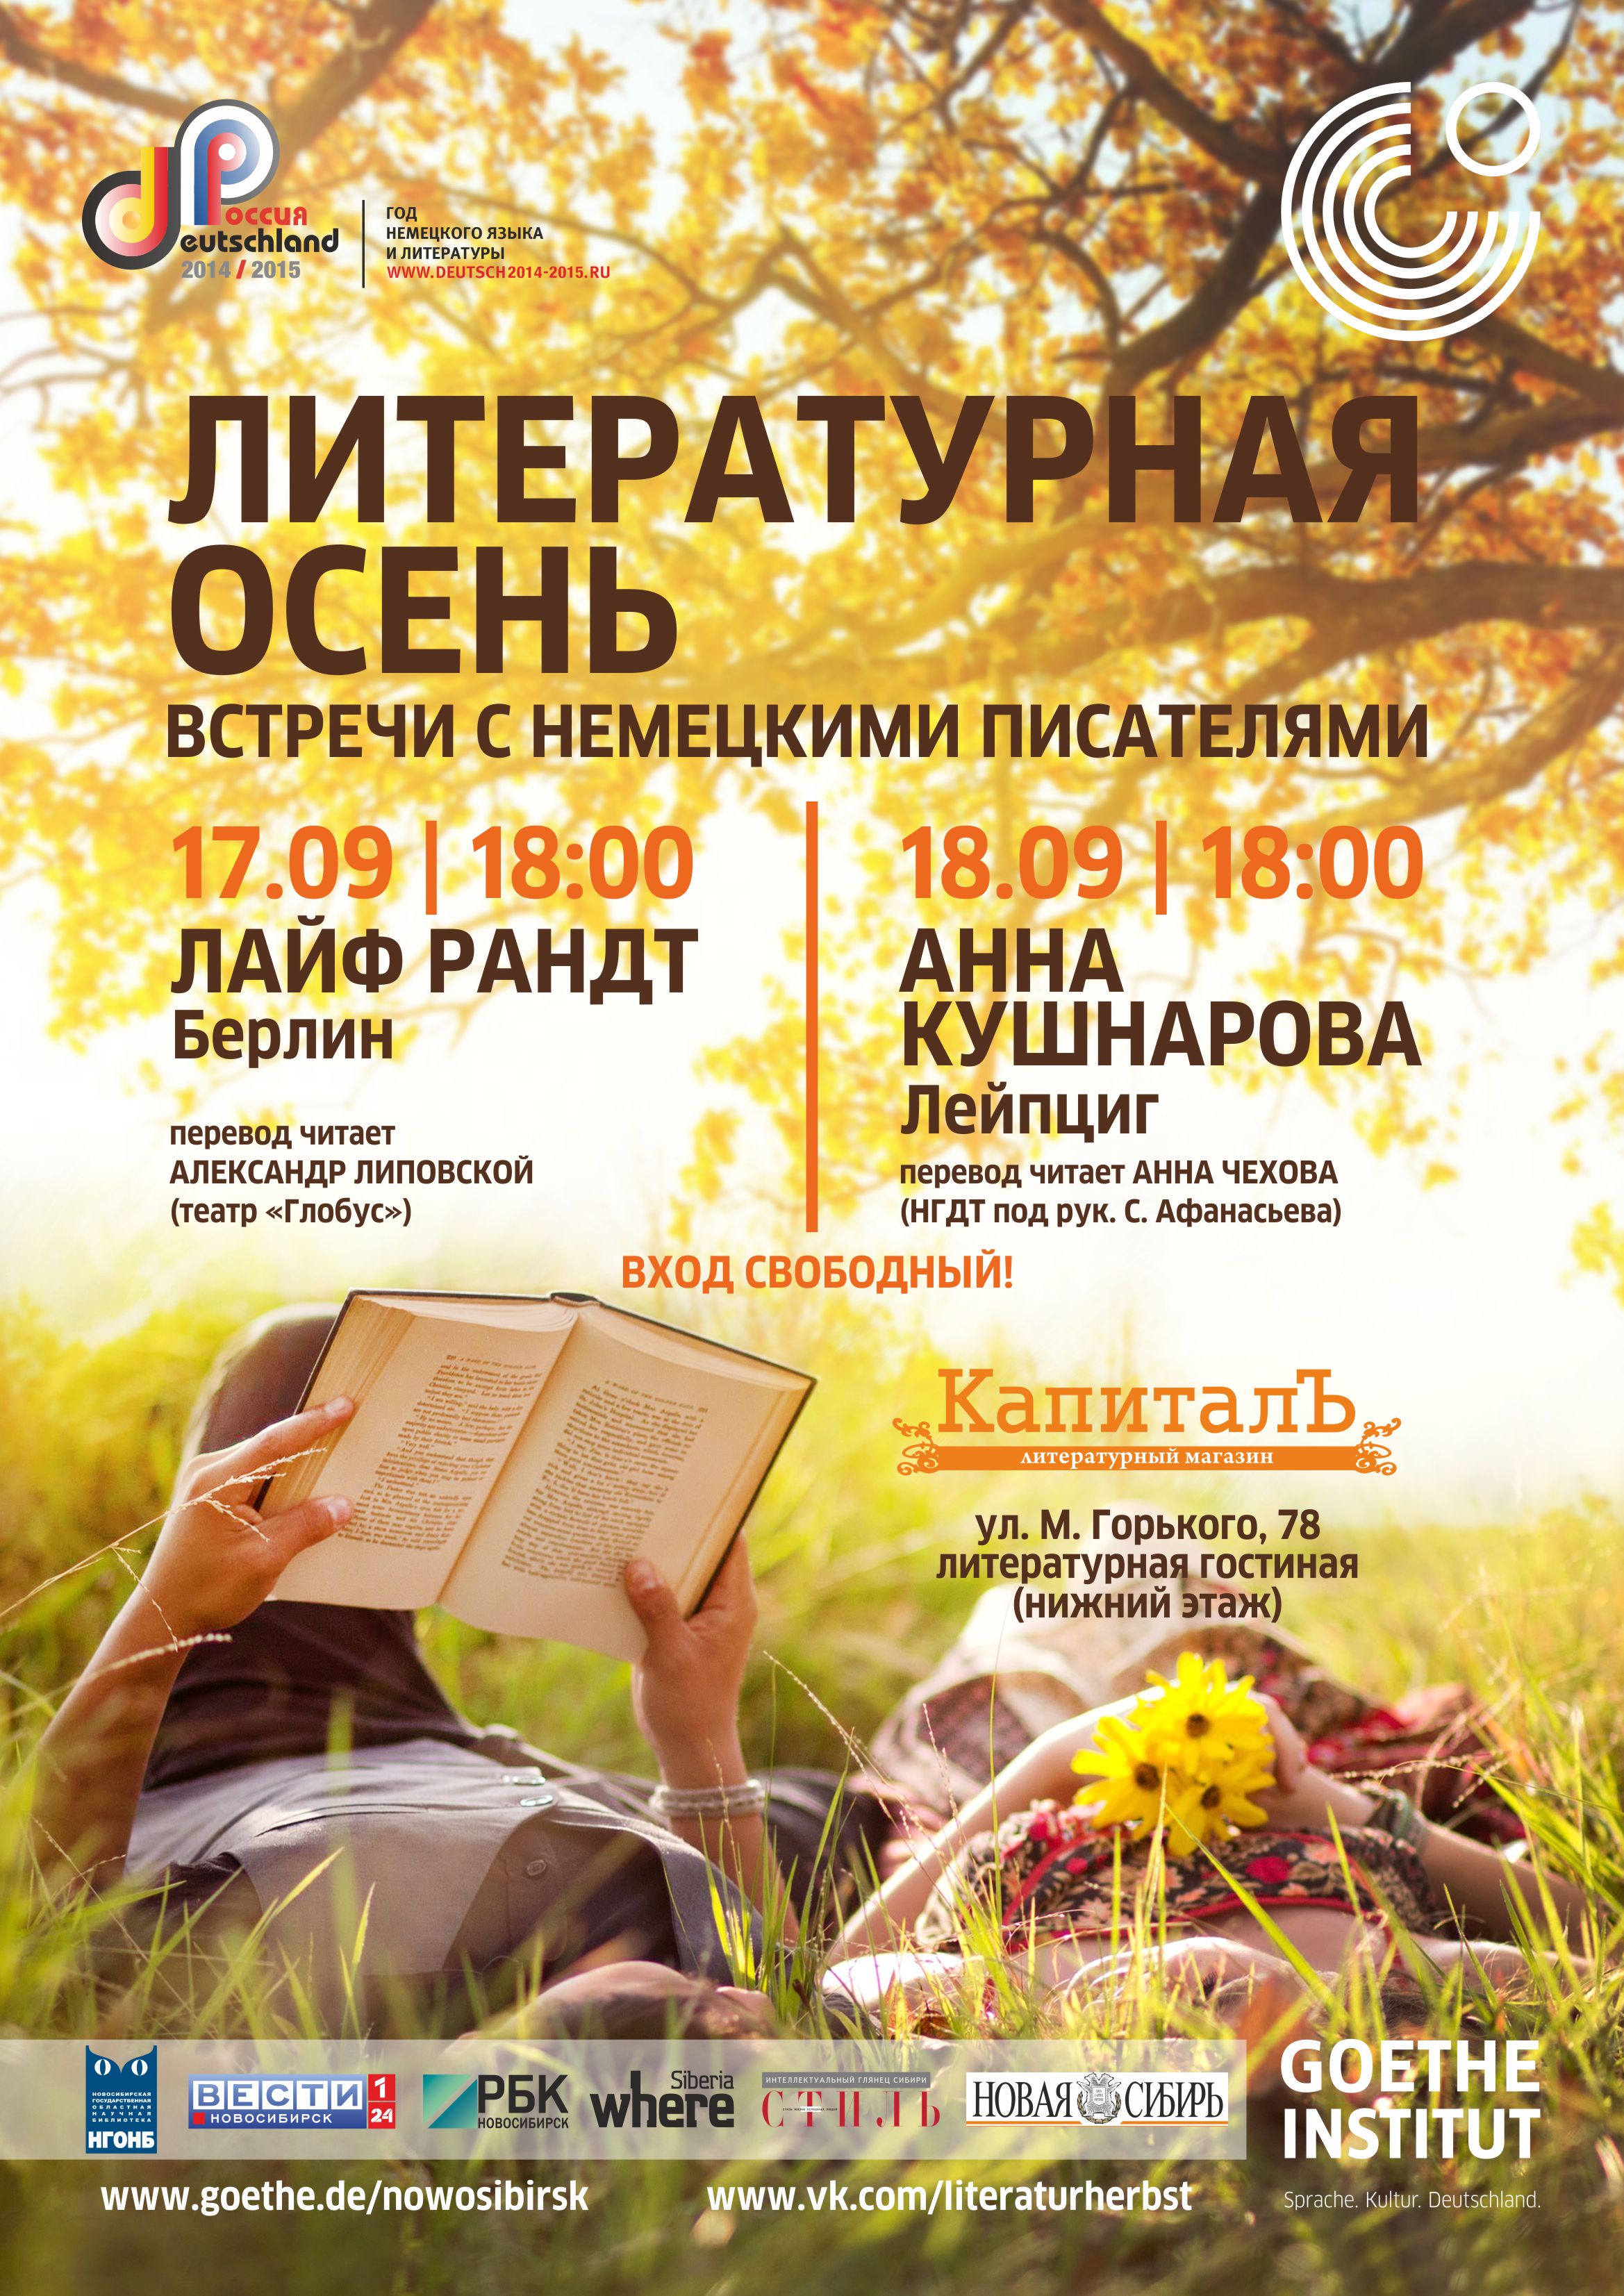 Литературная осень: в Новосибирске открывается «Год немецкого языка илитературы в России 2014/15»